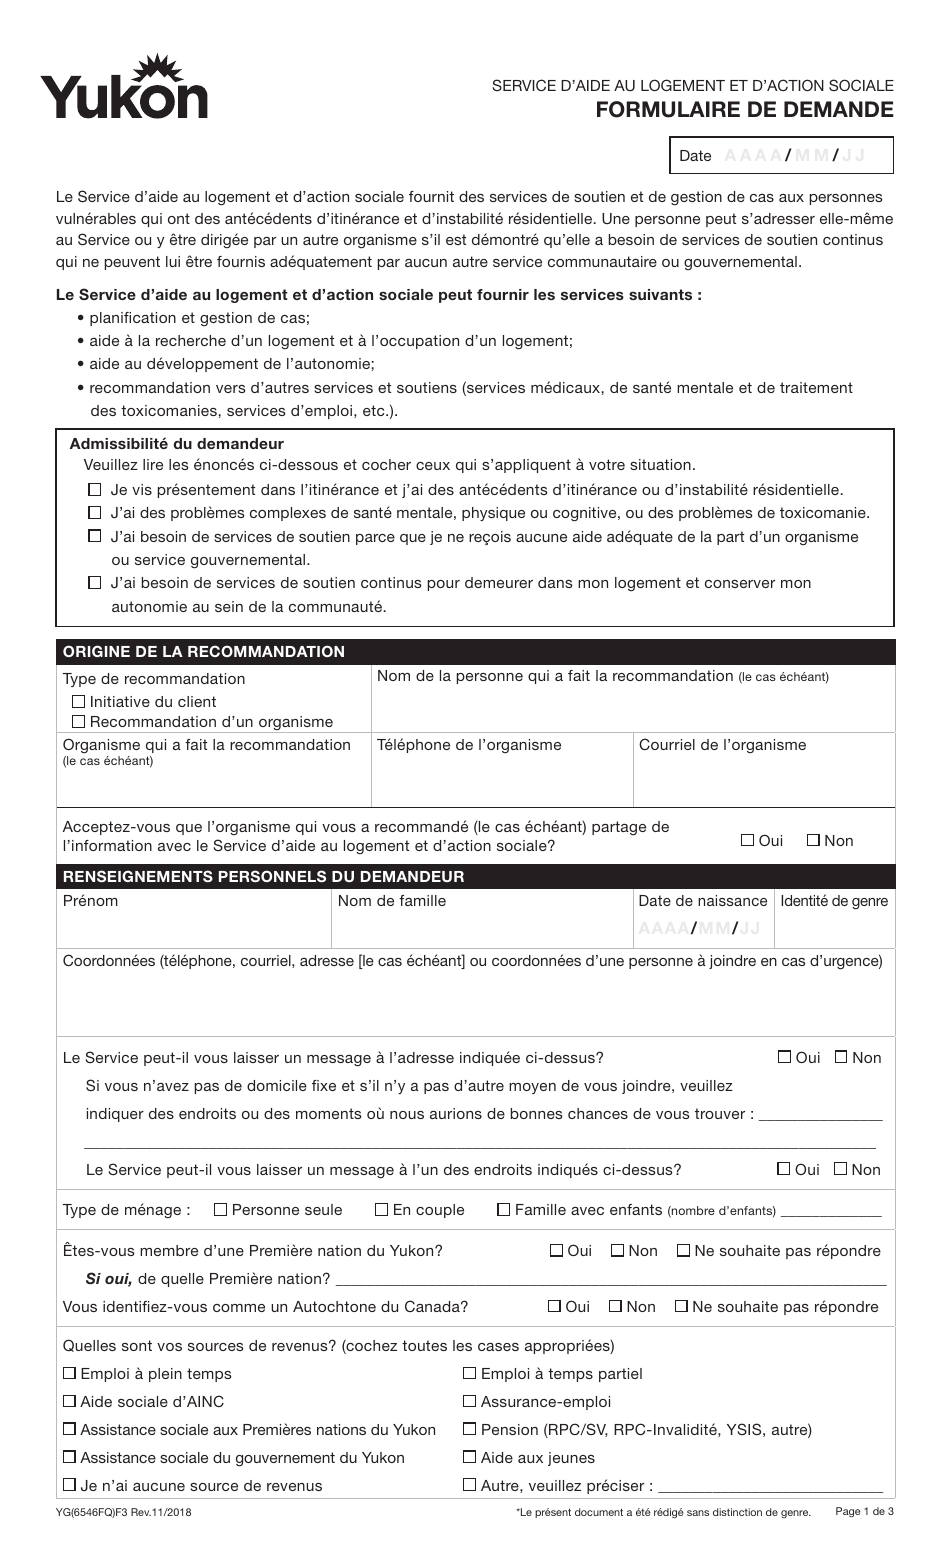 Forme YG6546 Formulaire De Demande - Service Daide Au Logement Et Daction Sociale - Yukon, Canada (French), Page 1